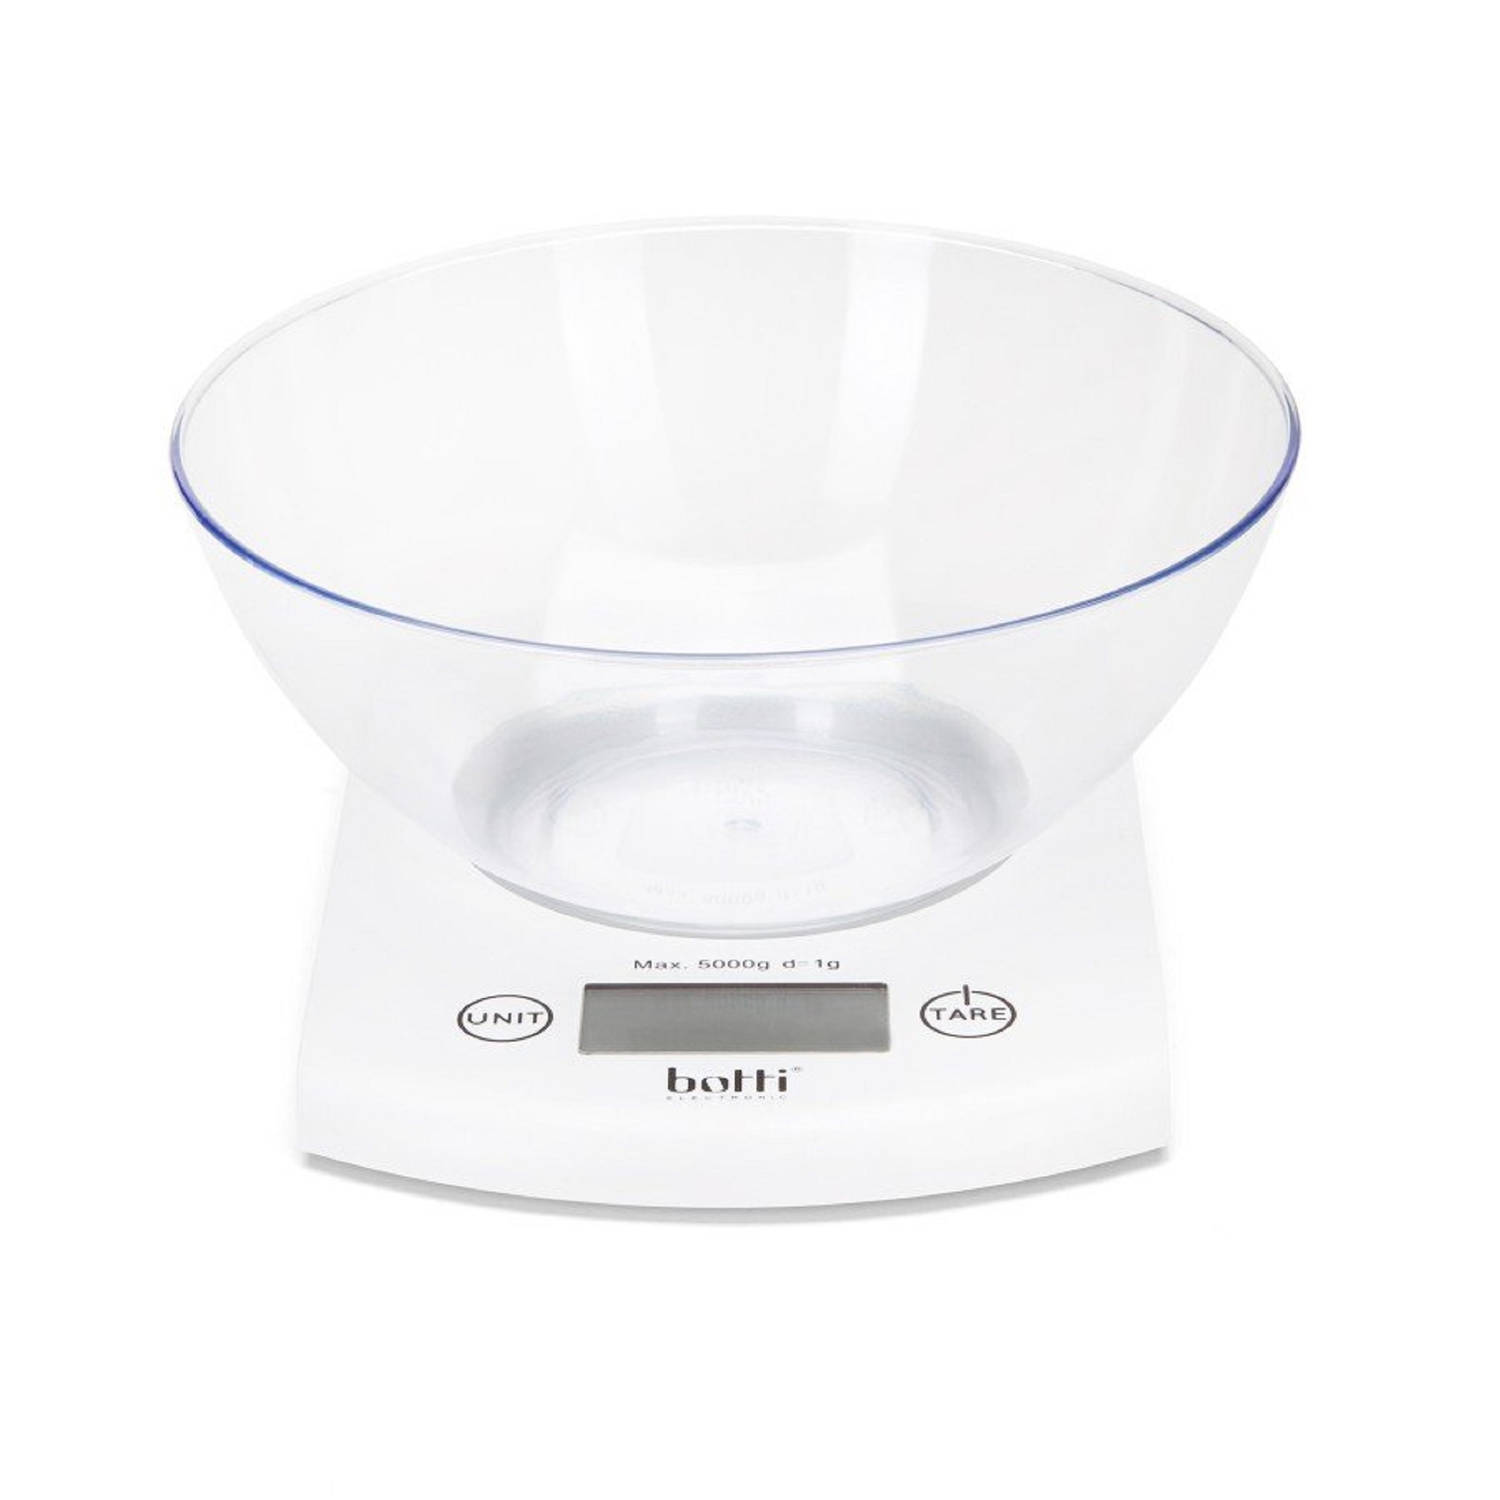 Botti Bowl Keukenweegschaal Digitaal Afneembare Kom 2l Wegen Tot 5 Kg 1 Gram Nauwkeurig Wit Transpar